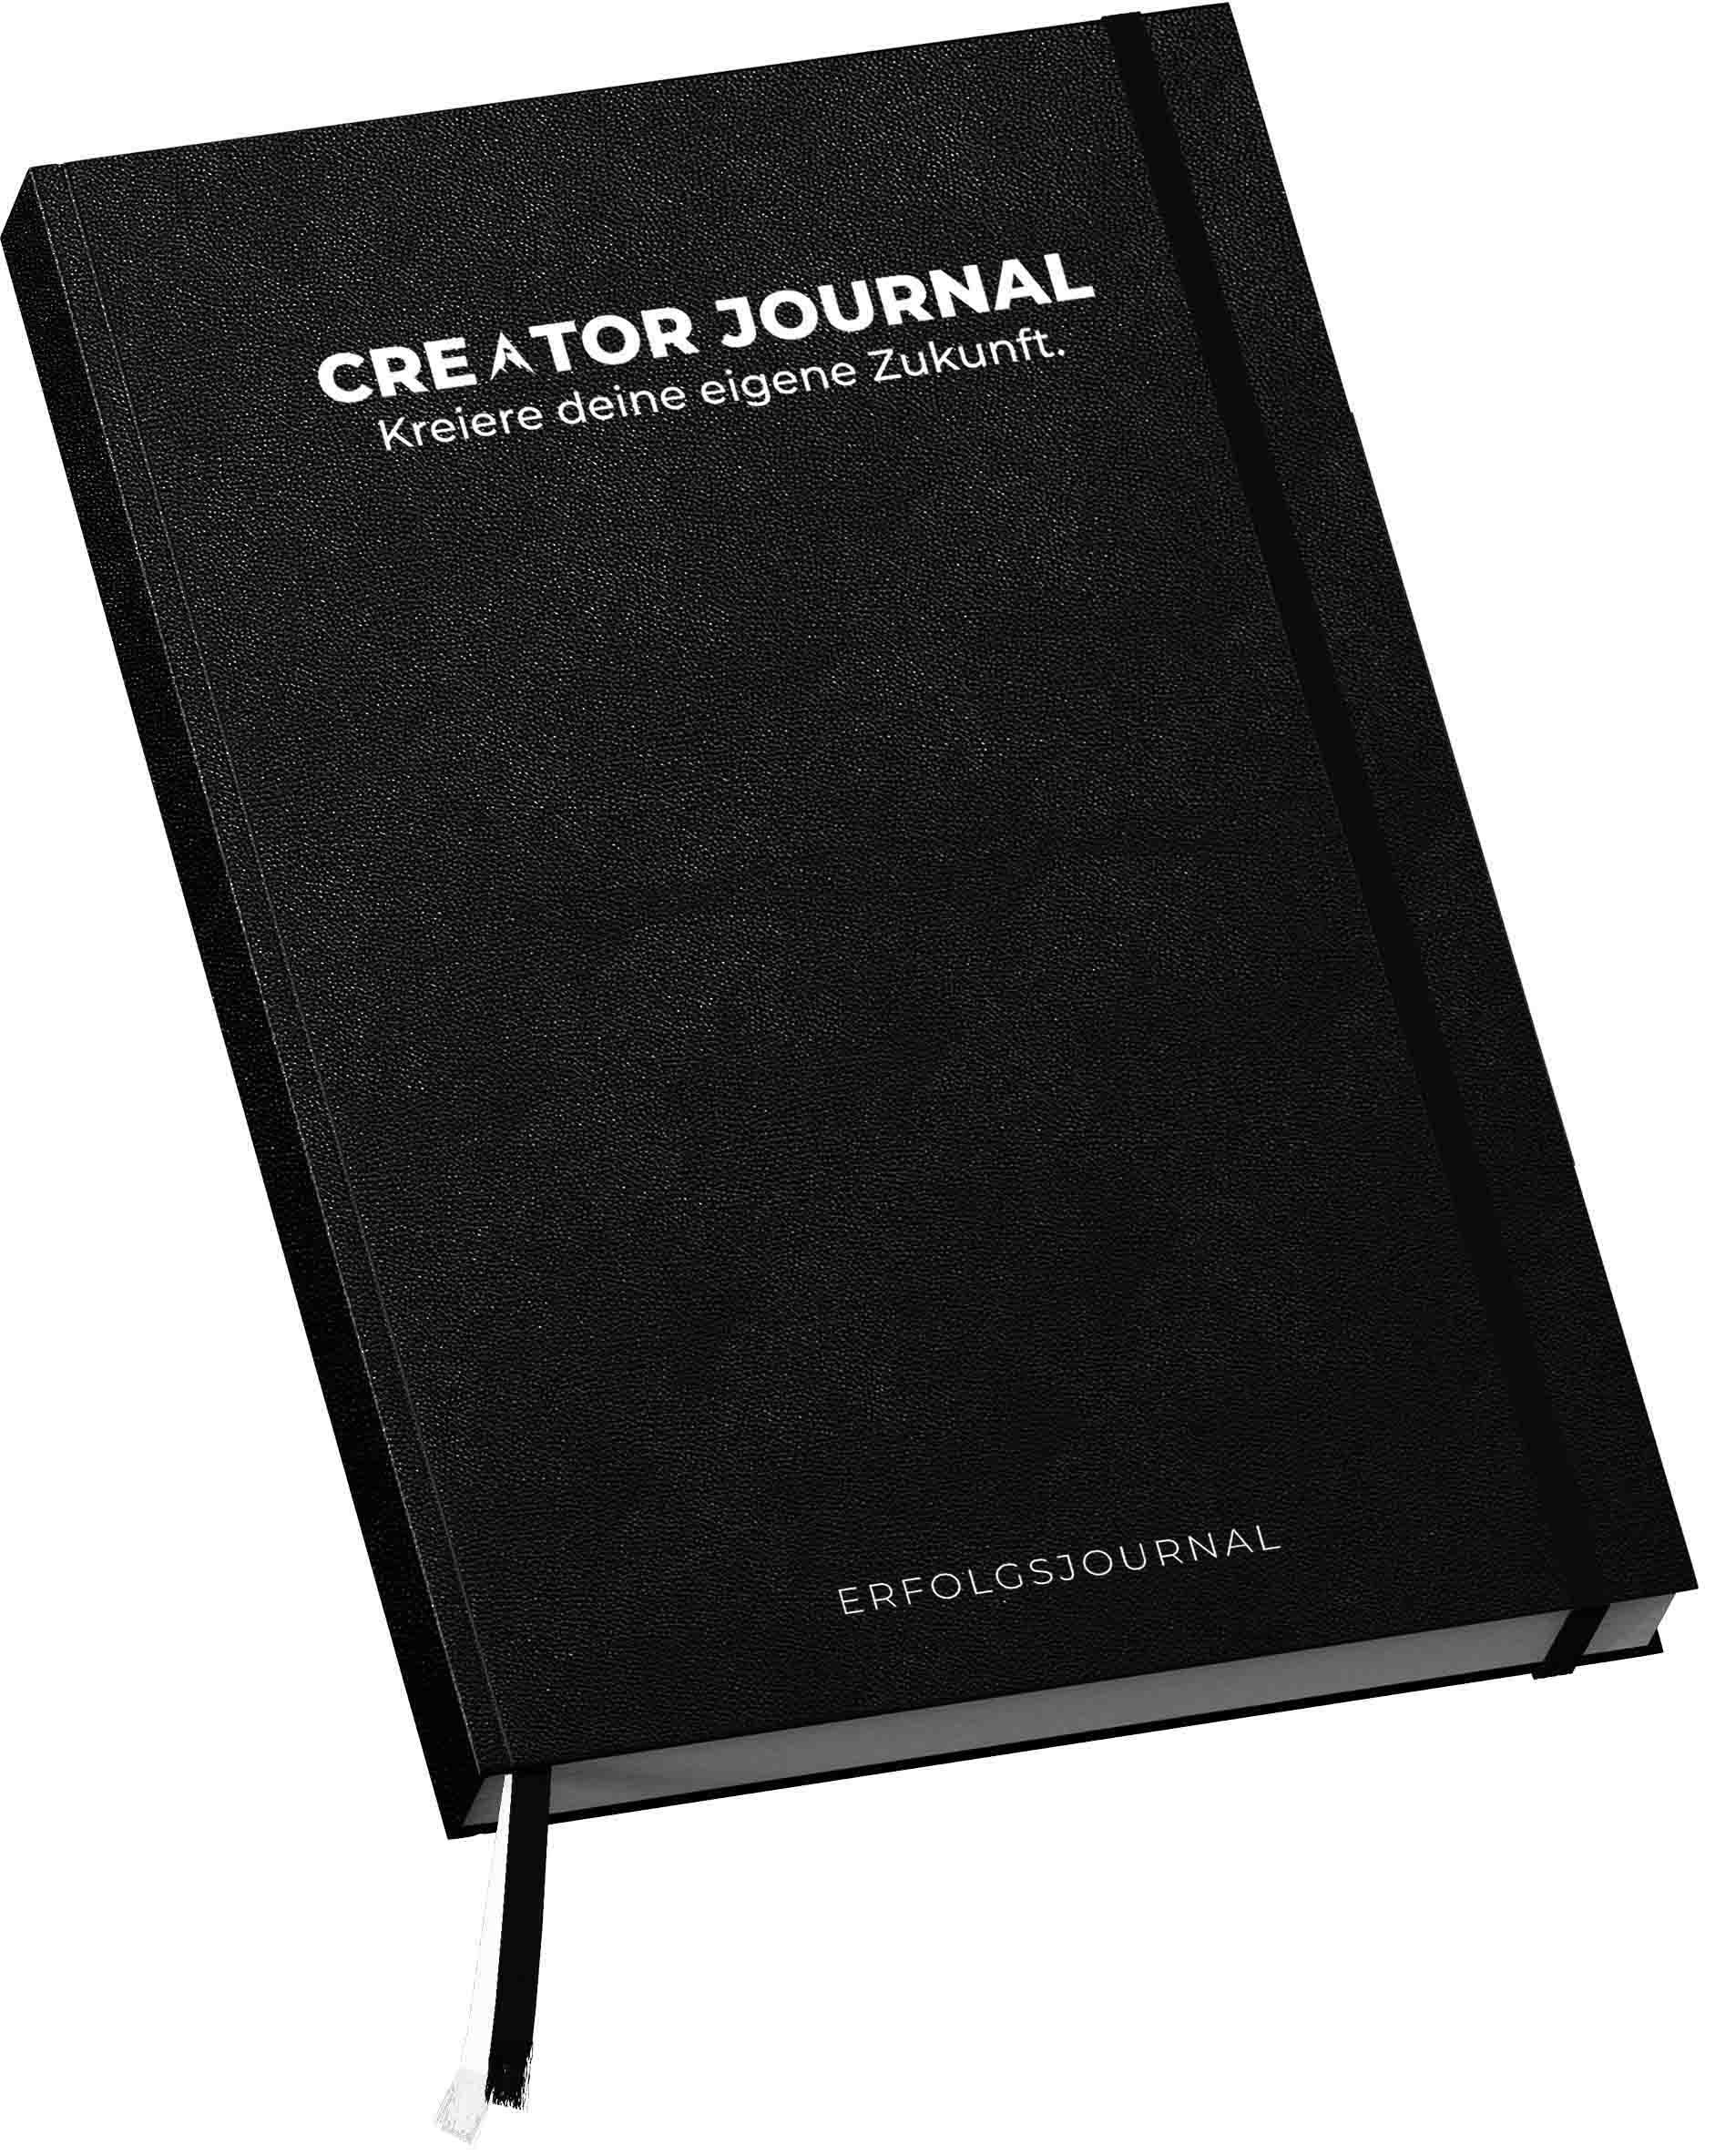 creator journal erfolgsjournal